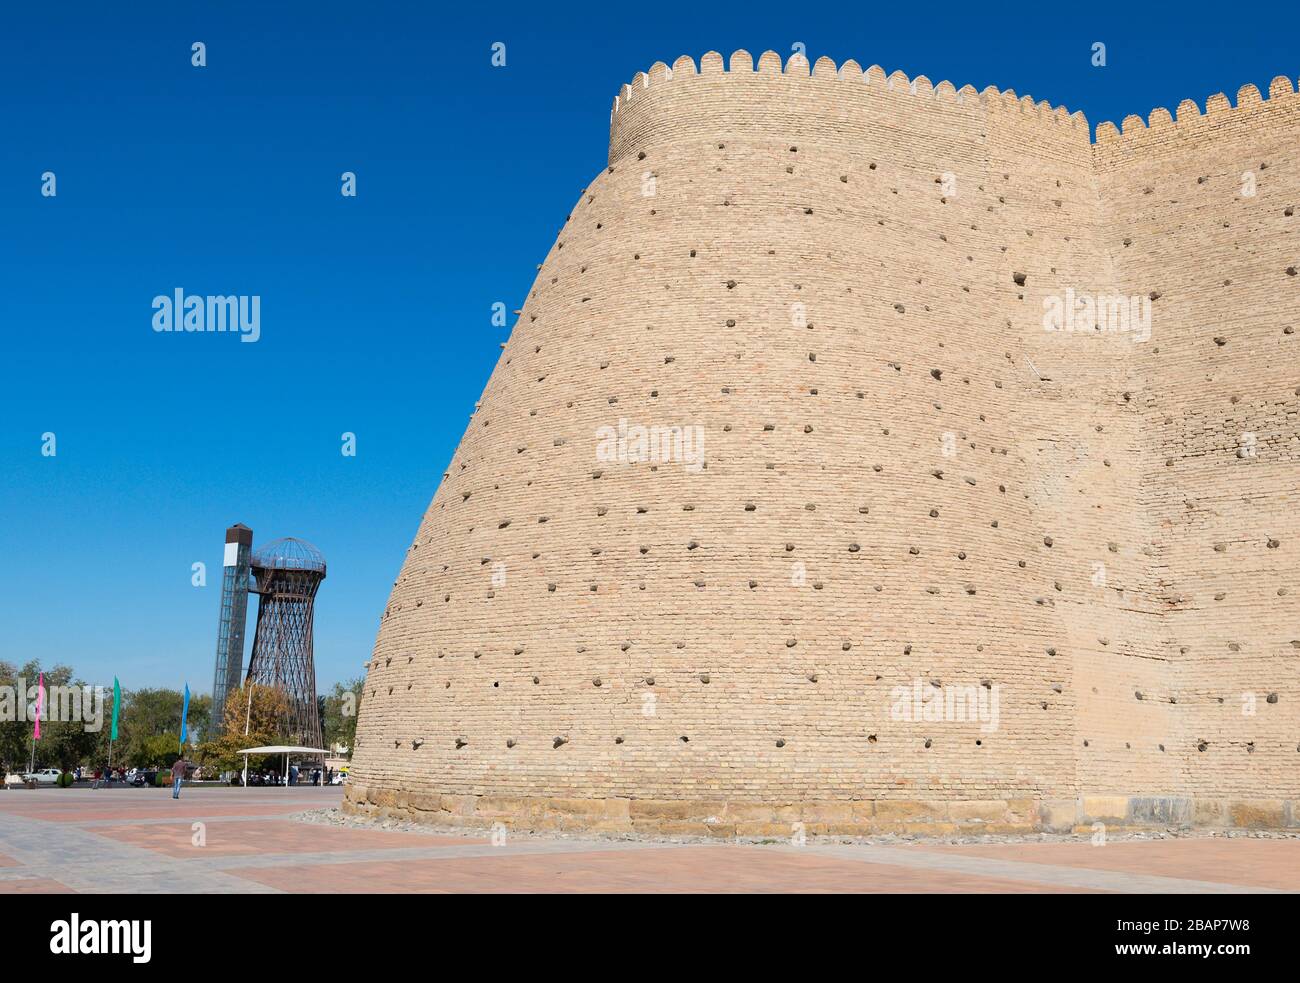 Mauer der Festung Buchara (Ark) und Shukhov Turm aus der sowjetischen Zeit vor kurzem für Touristen modernisiert. Buchara, Usbekistan. Stockfoto